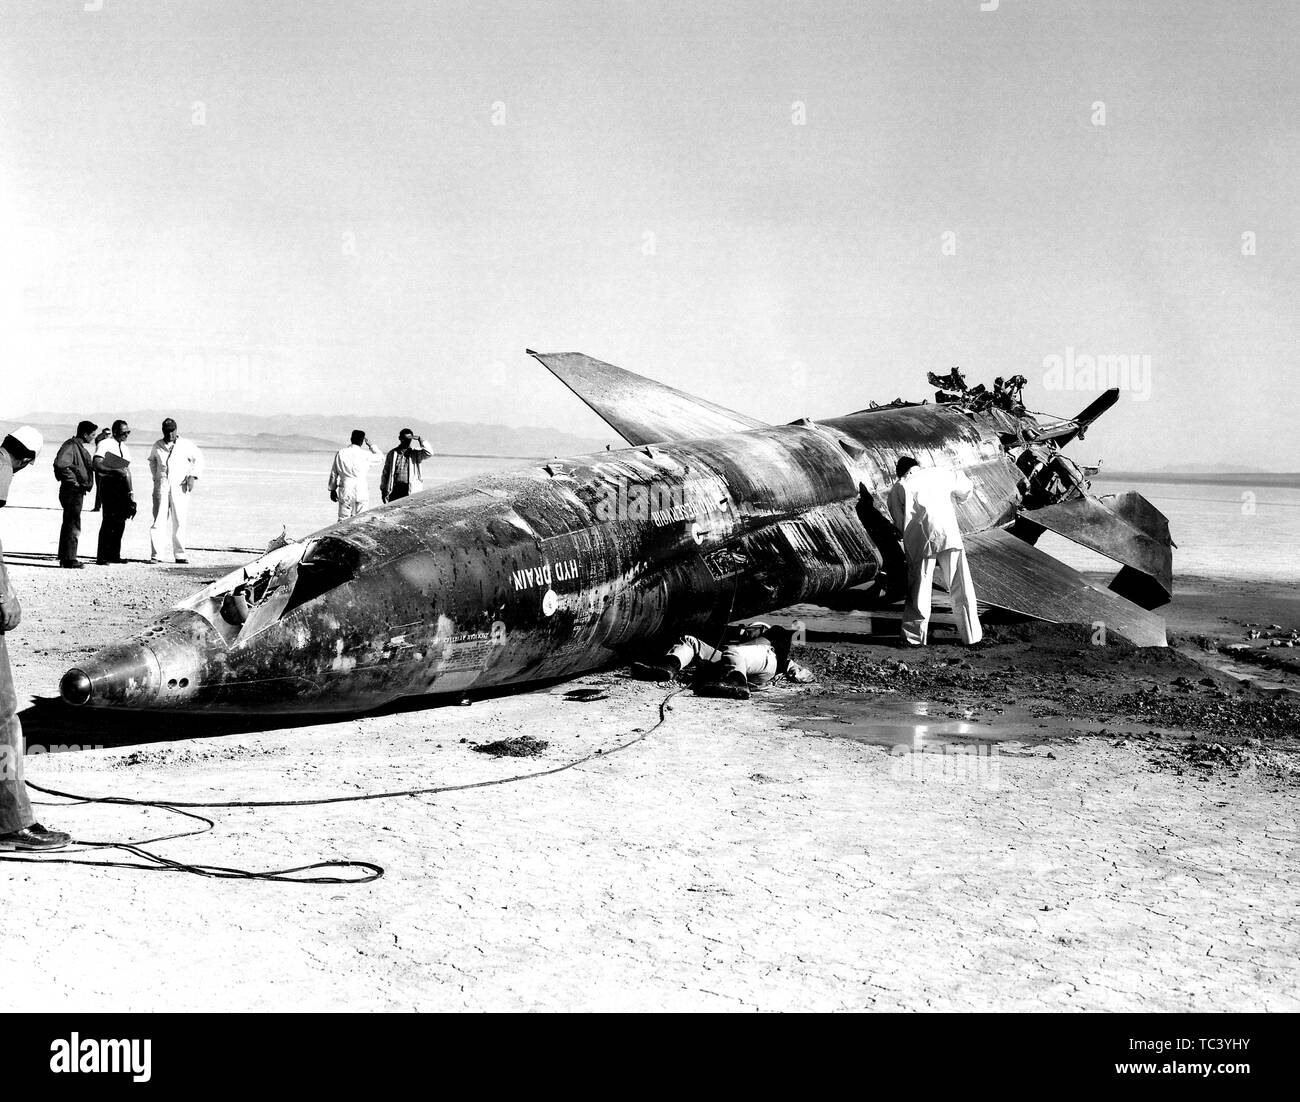 Eine Luftwaffe Team versammelt sich um ein X-15 Rakete - angetriebene Flugzeug Absturz bei Schlamm Lake, Nevada, 9. November 1962. Mit freundlicher Genehmigung der Nationalen Luft- und Raumfahrtbehörde (NASA). () Stockfoto